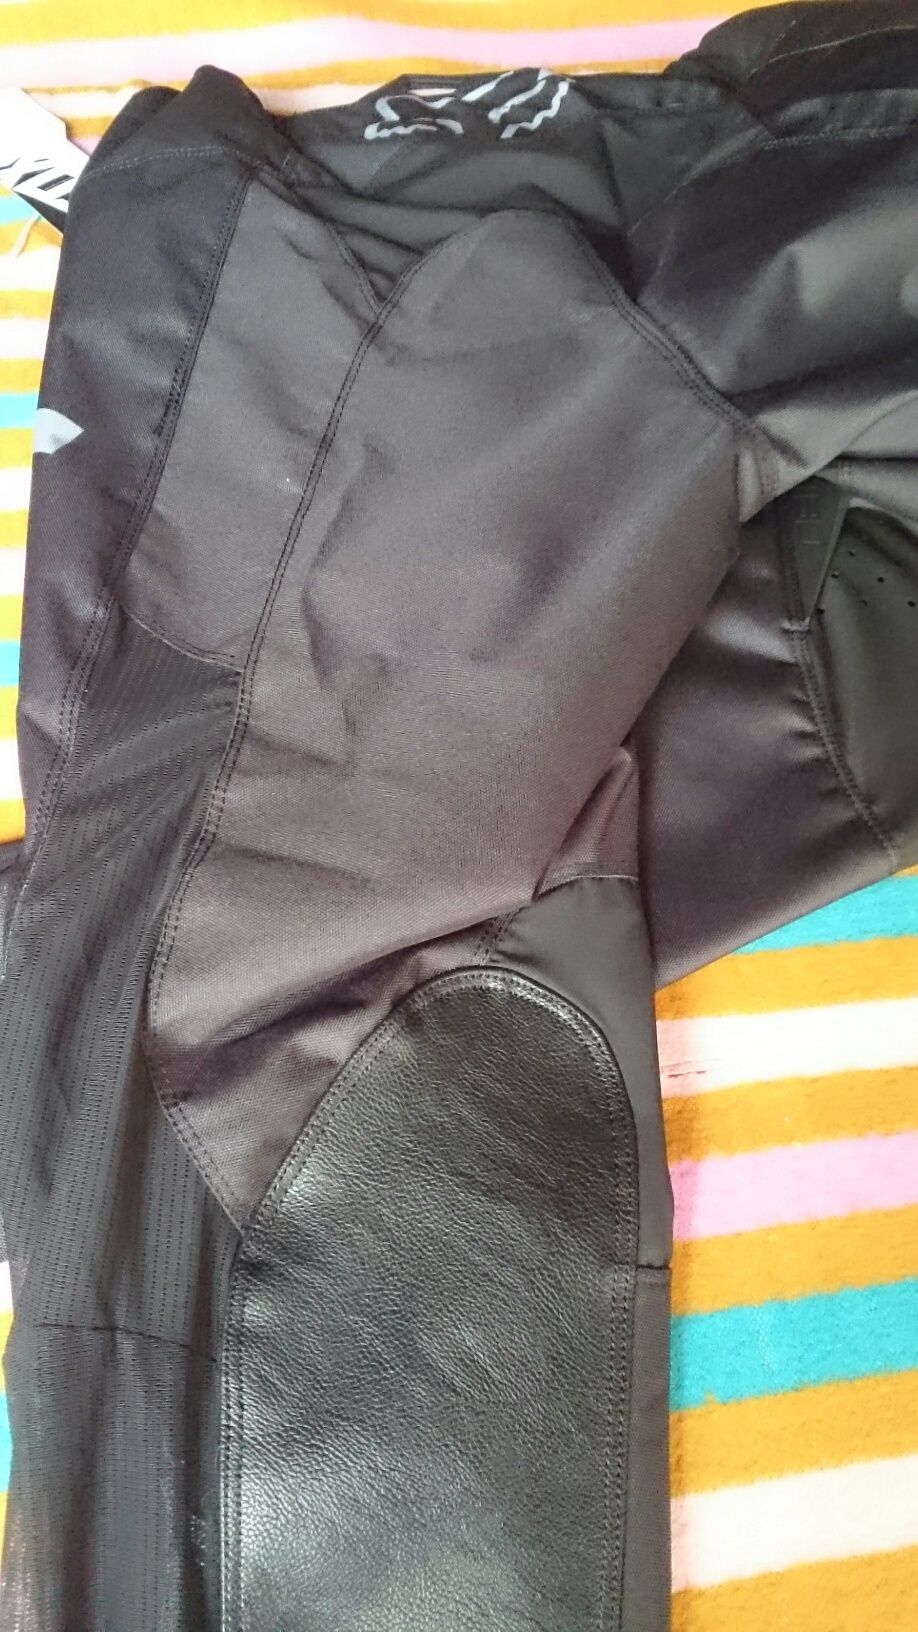 Bluza spodnie Fox strój enduro cross quad 34 L 36 XL 38 XXL 40 XXXL 3X